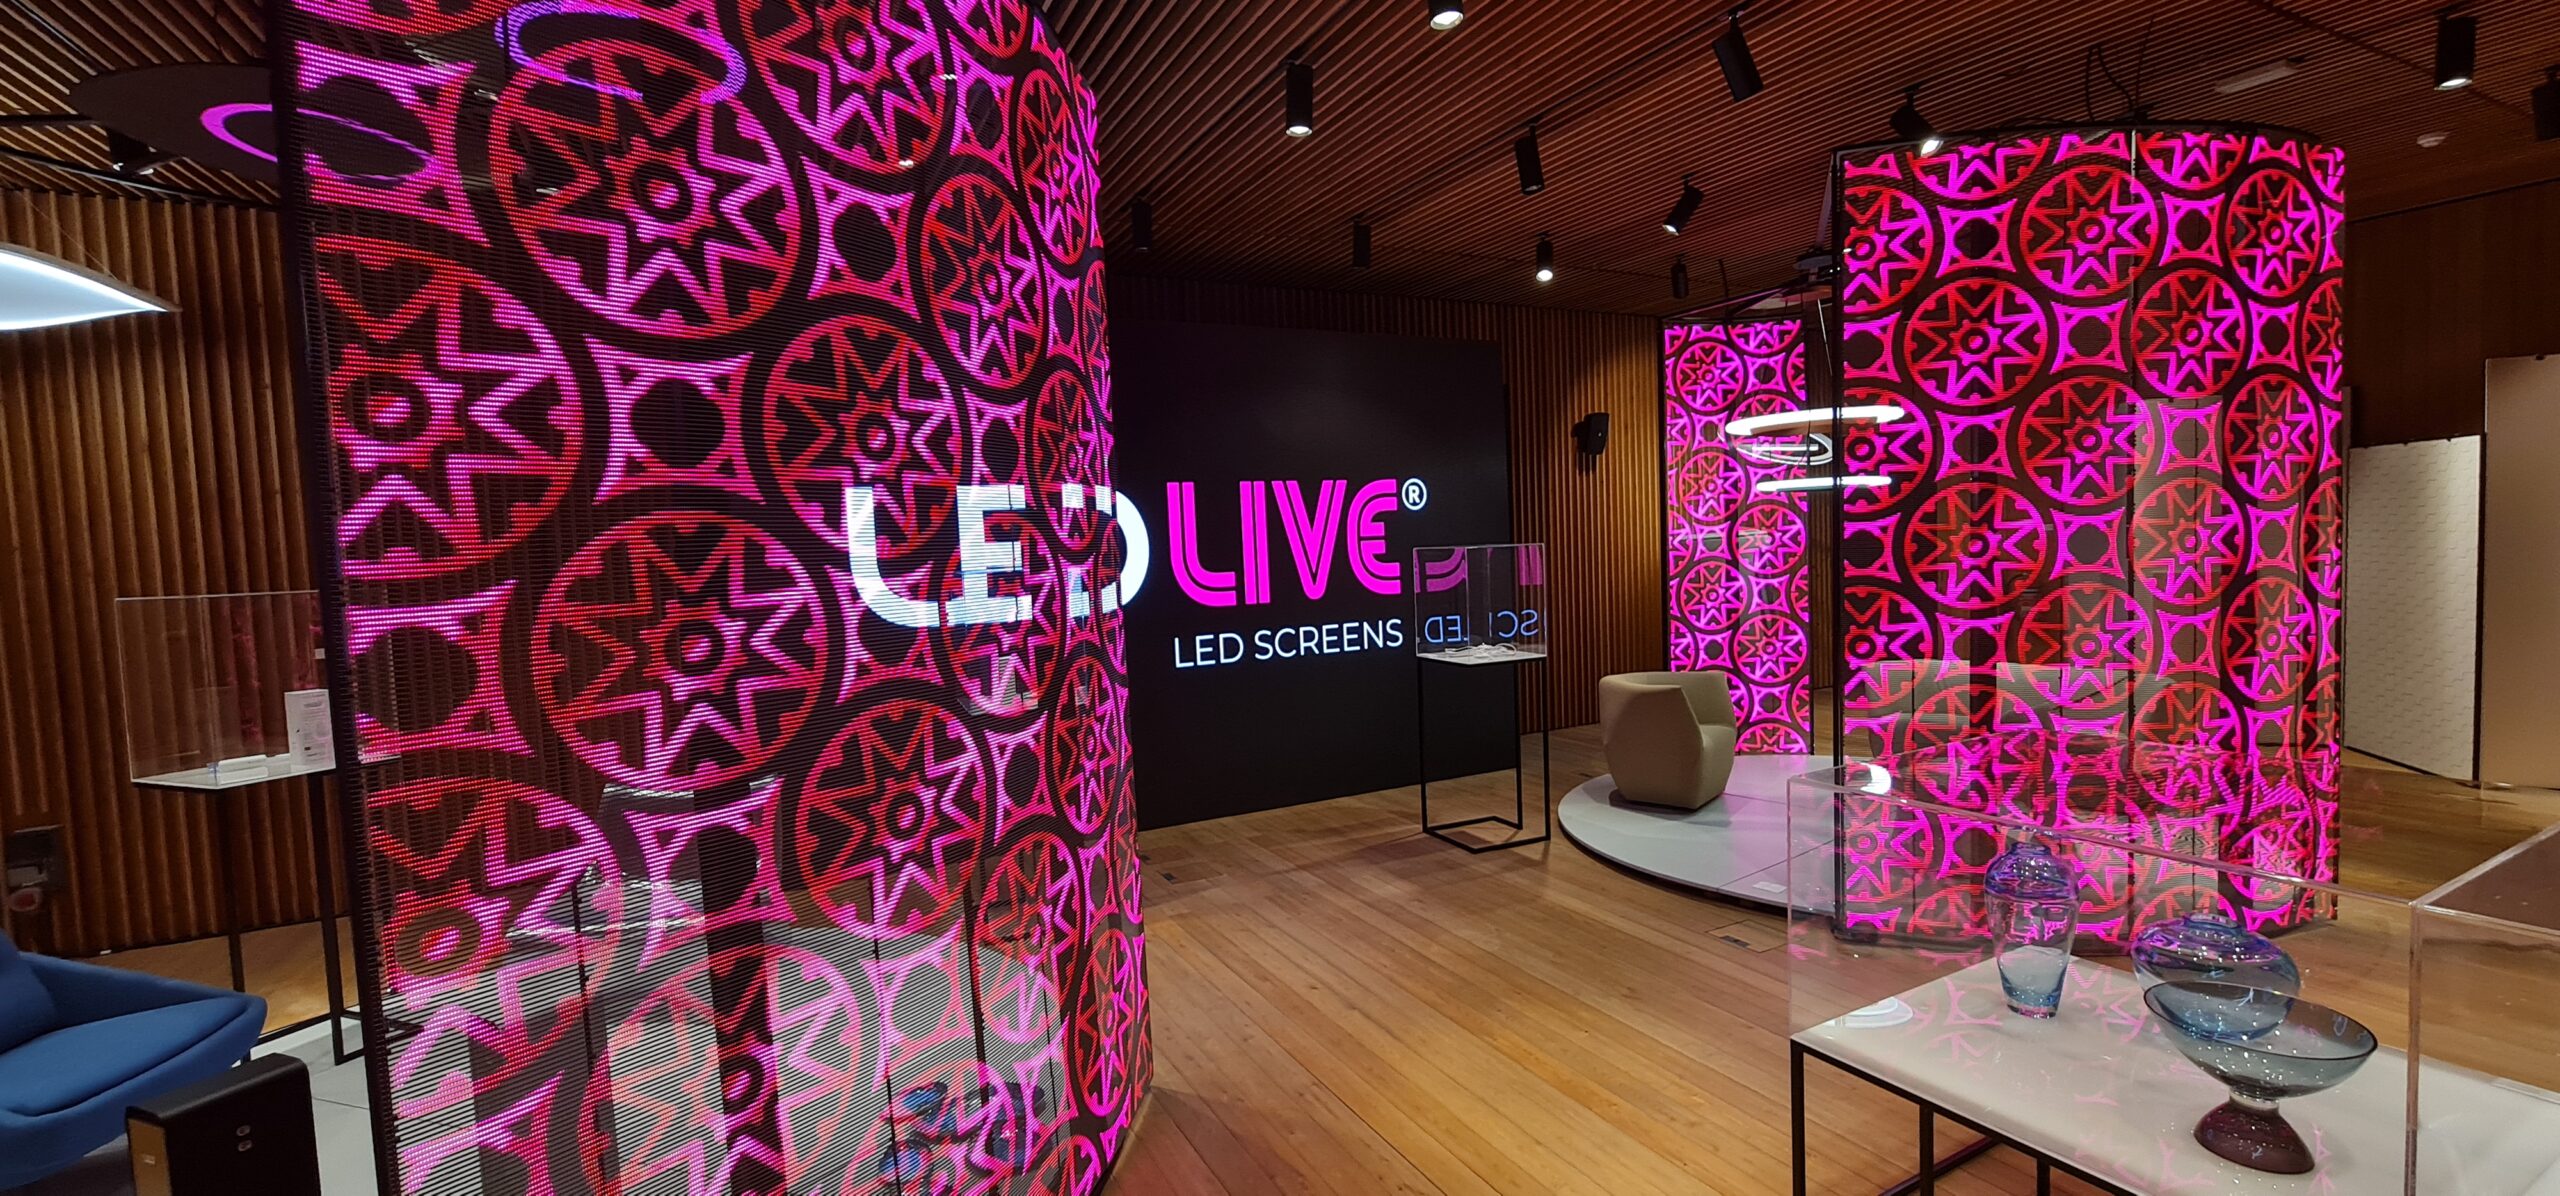 Różowe mozaikowe wzory na transparentnych ekranach  LED , w tle logo LedLIVE w czasie EXPO Dubai 2020